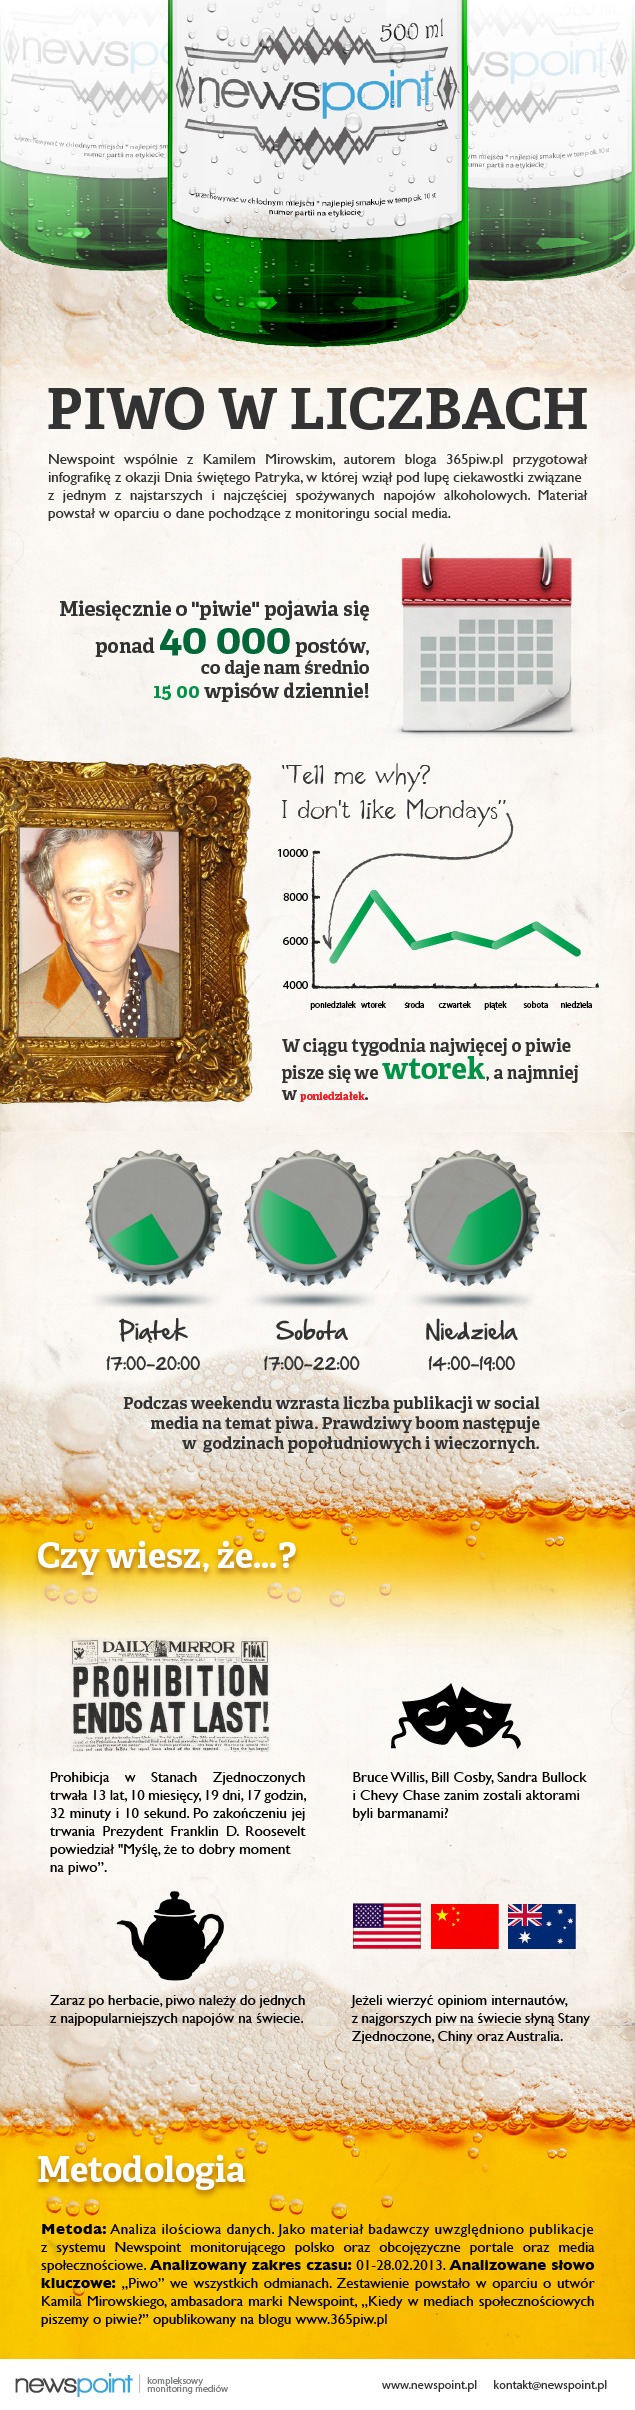 Newspoint_infografika_piwna_MrSocial_365piw_Kamil_Mirowski